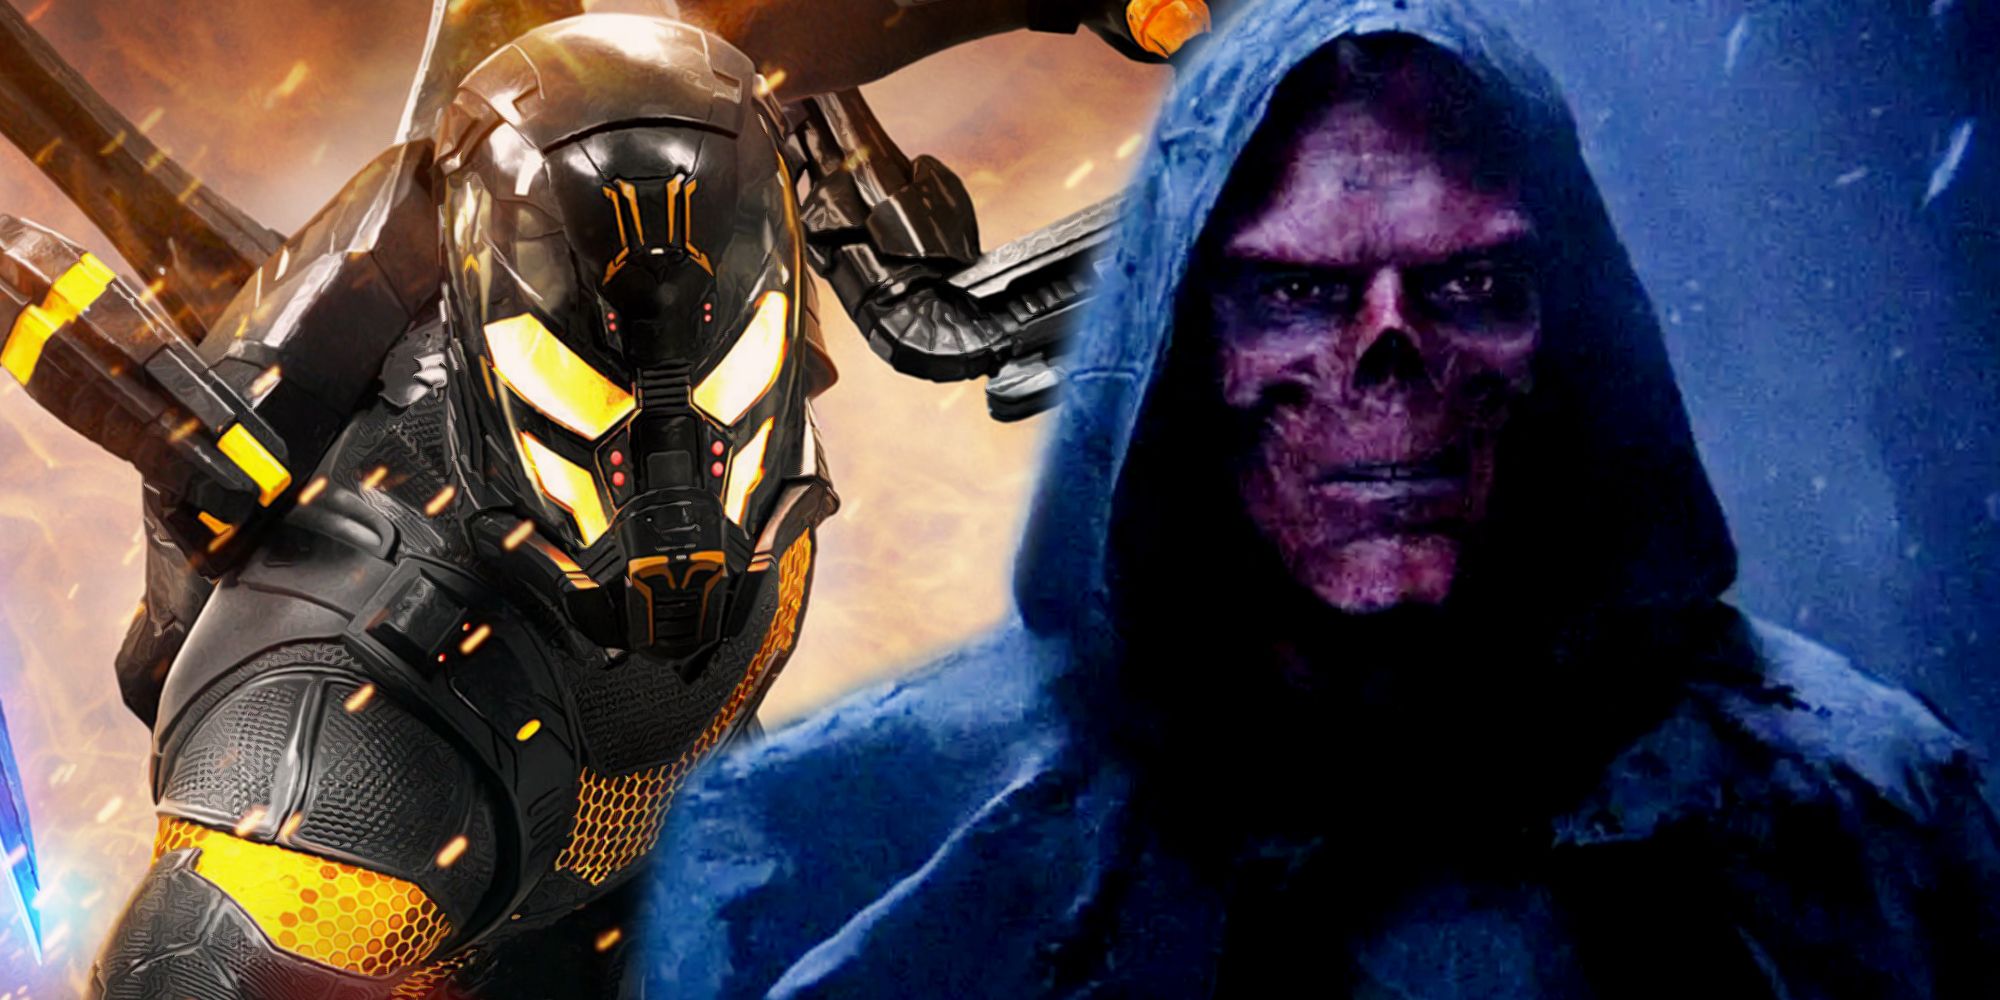 Avengers Infinity War Endgame တွင် Red Skull နှင့် Ant Man.jpg တွင် Yellowjacket